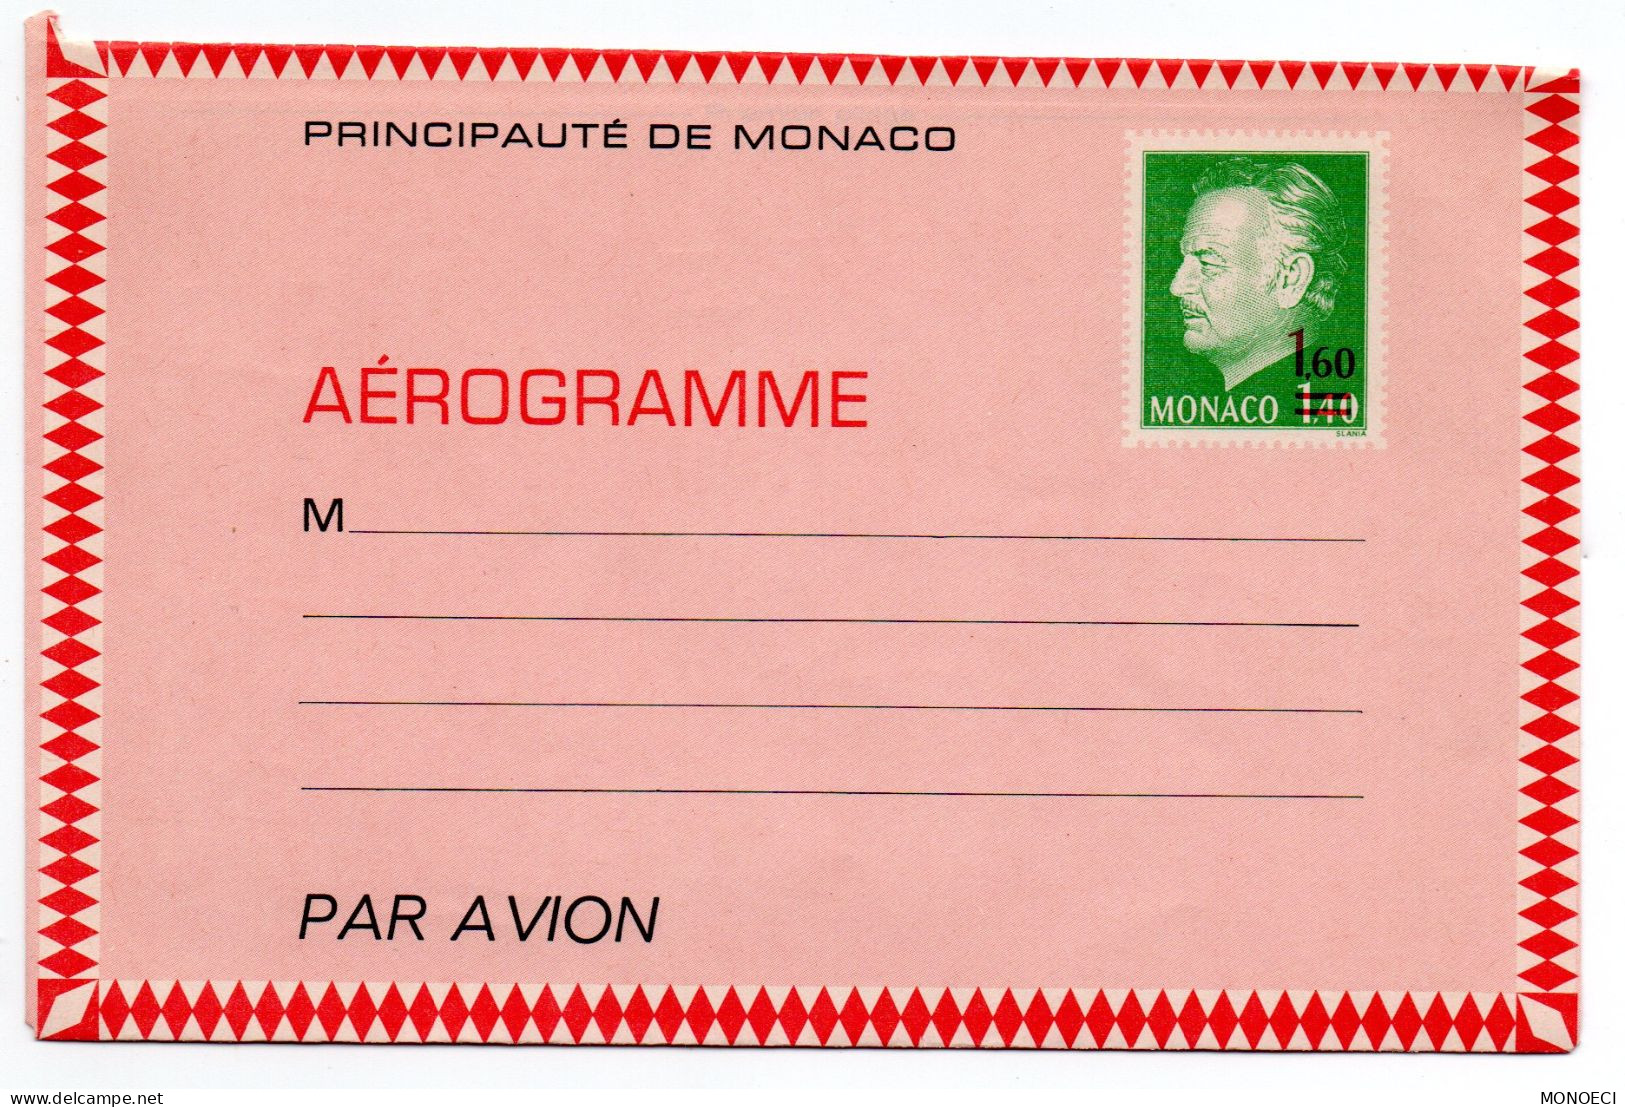 MONACO -- MONTE CARLO -- Monégasque -- Entier Postal -- Aérogramme -- Prince Rainier III 1F40 Surchargé 1F60 (1976) - Enteros  Postales